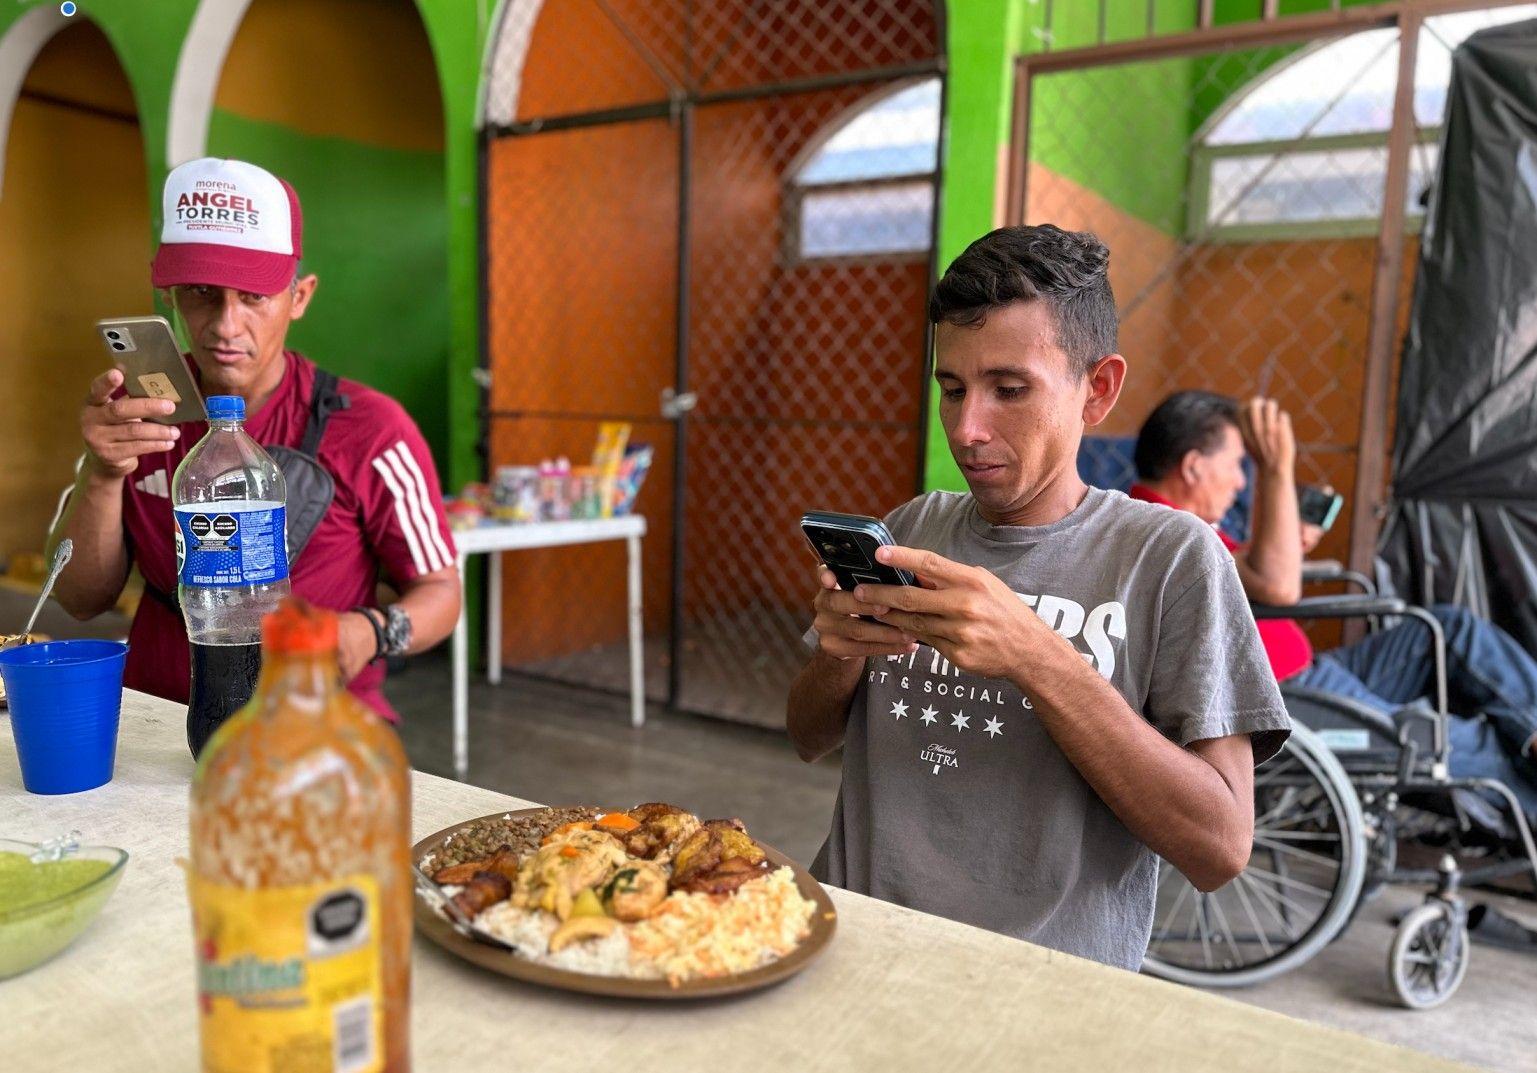 Carlos José Soto, migrante de Carabobo, Venezuela, saca una foto a su ansiado almuerzo venezolano. 